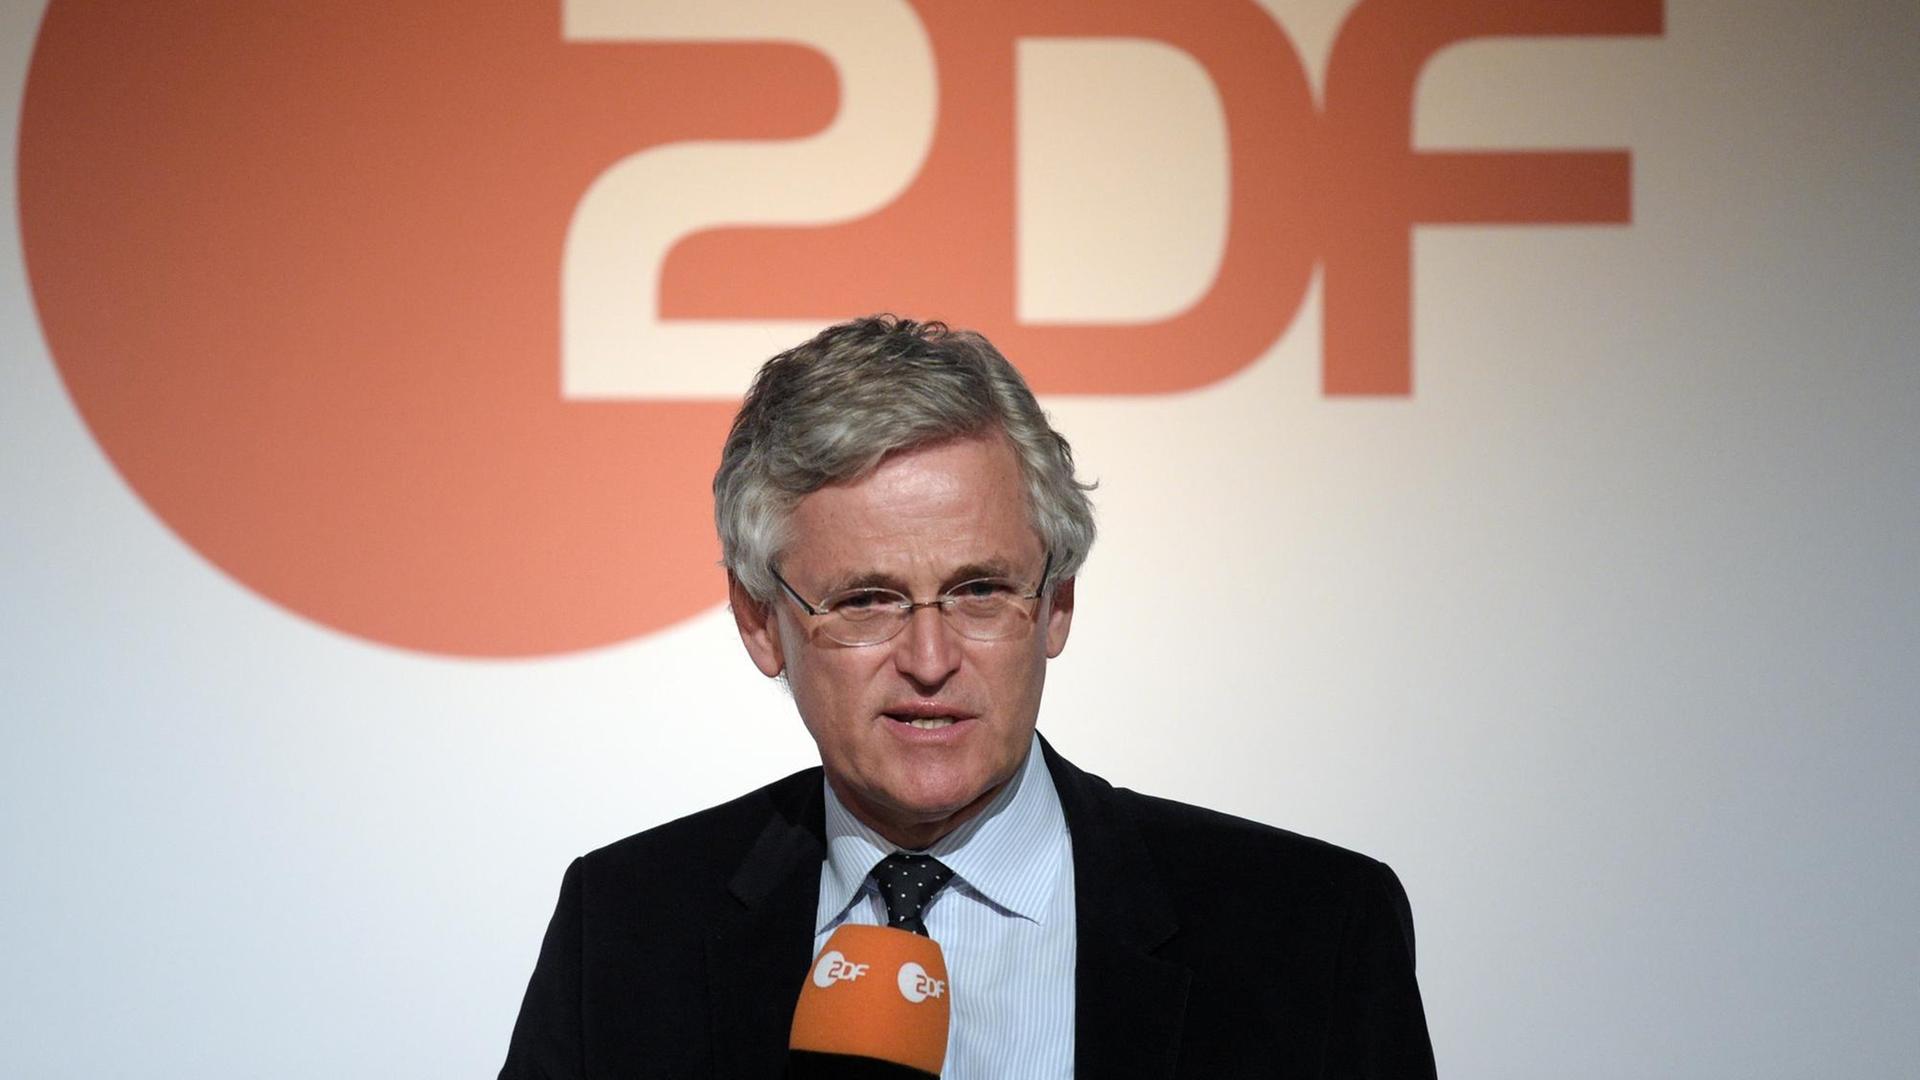 Der ZDF-Chefredakteur Peter Frey spricht am 11.04.2016 bei einer Pressekonferenz in Berlin.